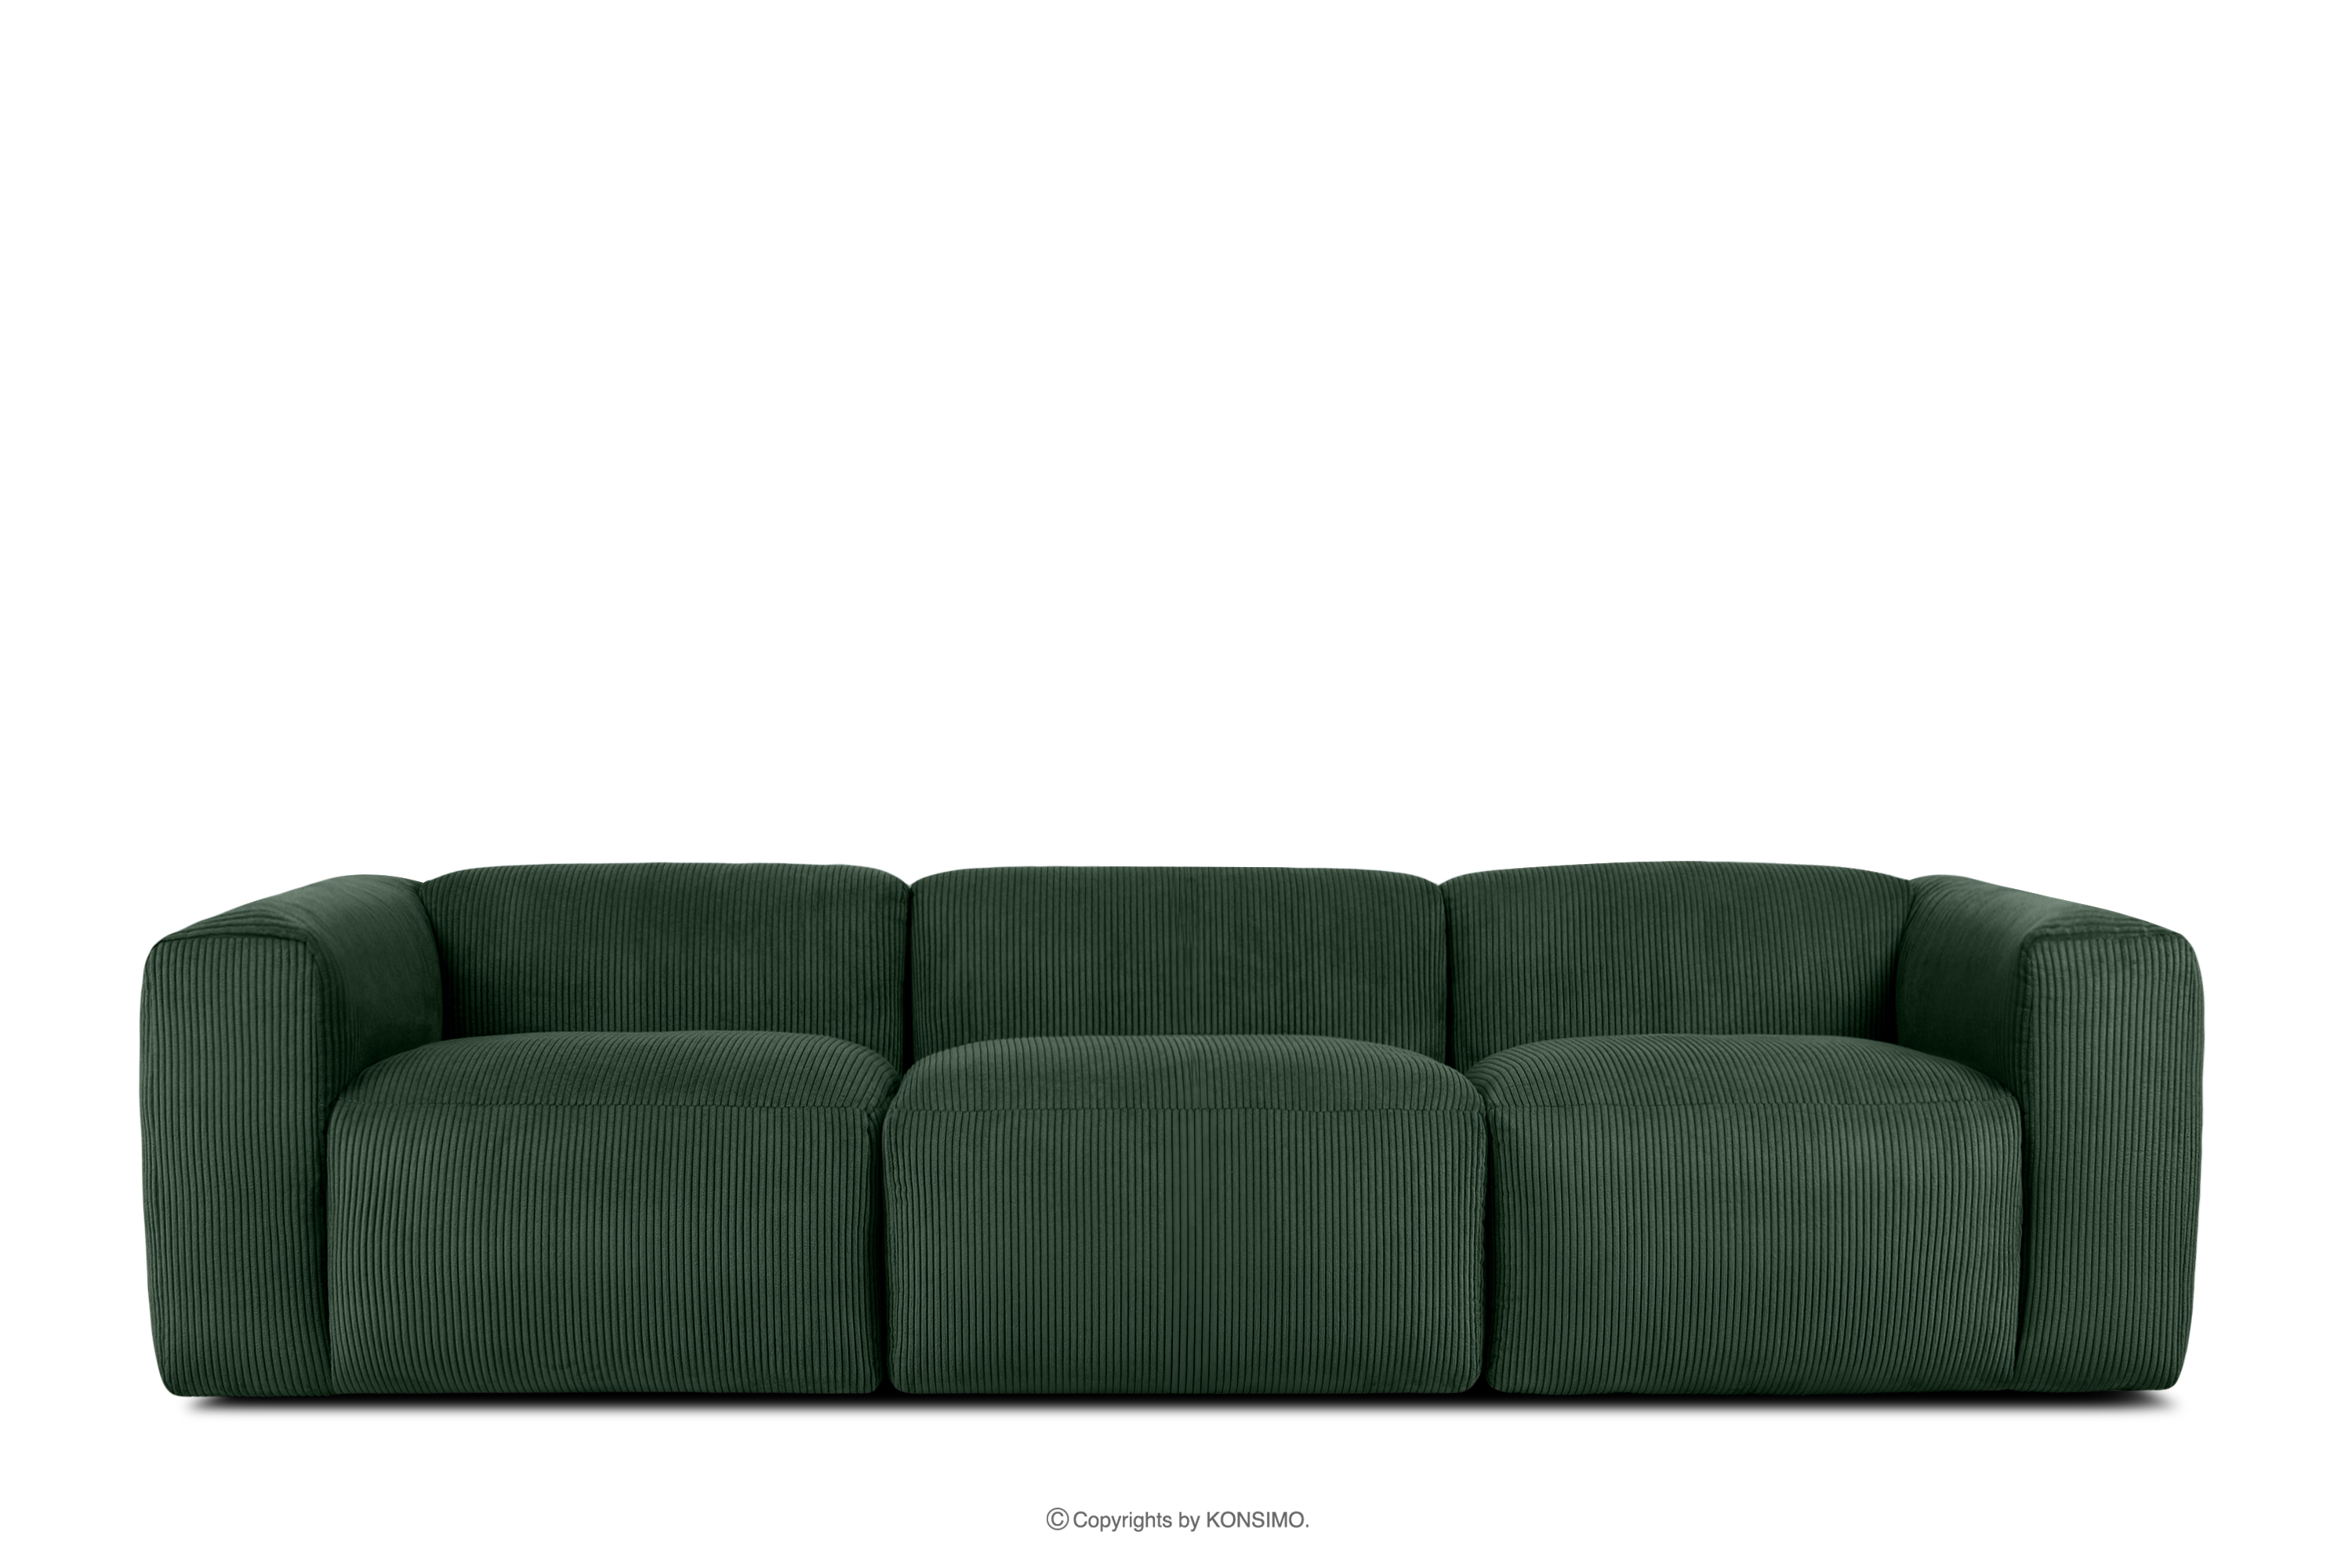 Sofa 3 modułowa w tkaninie sztruks ciemny zielona